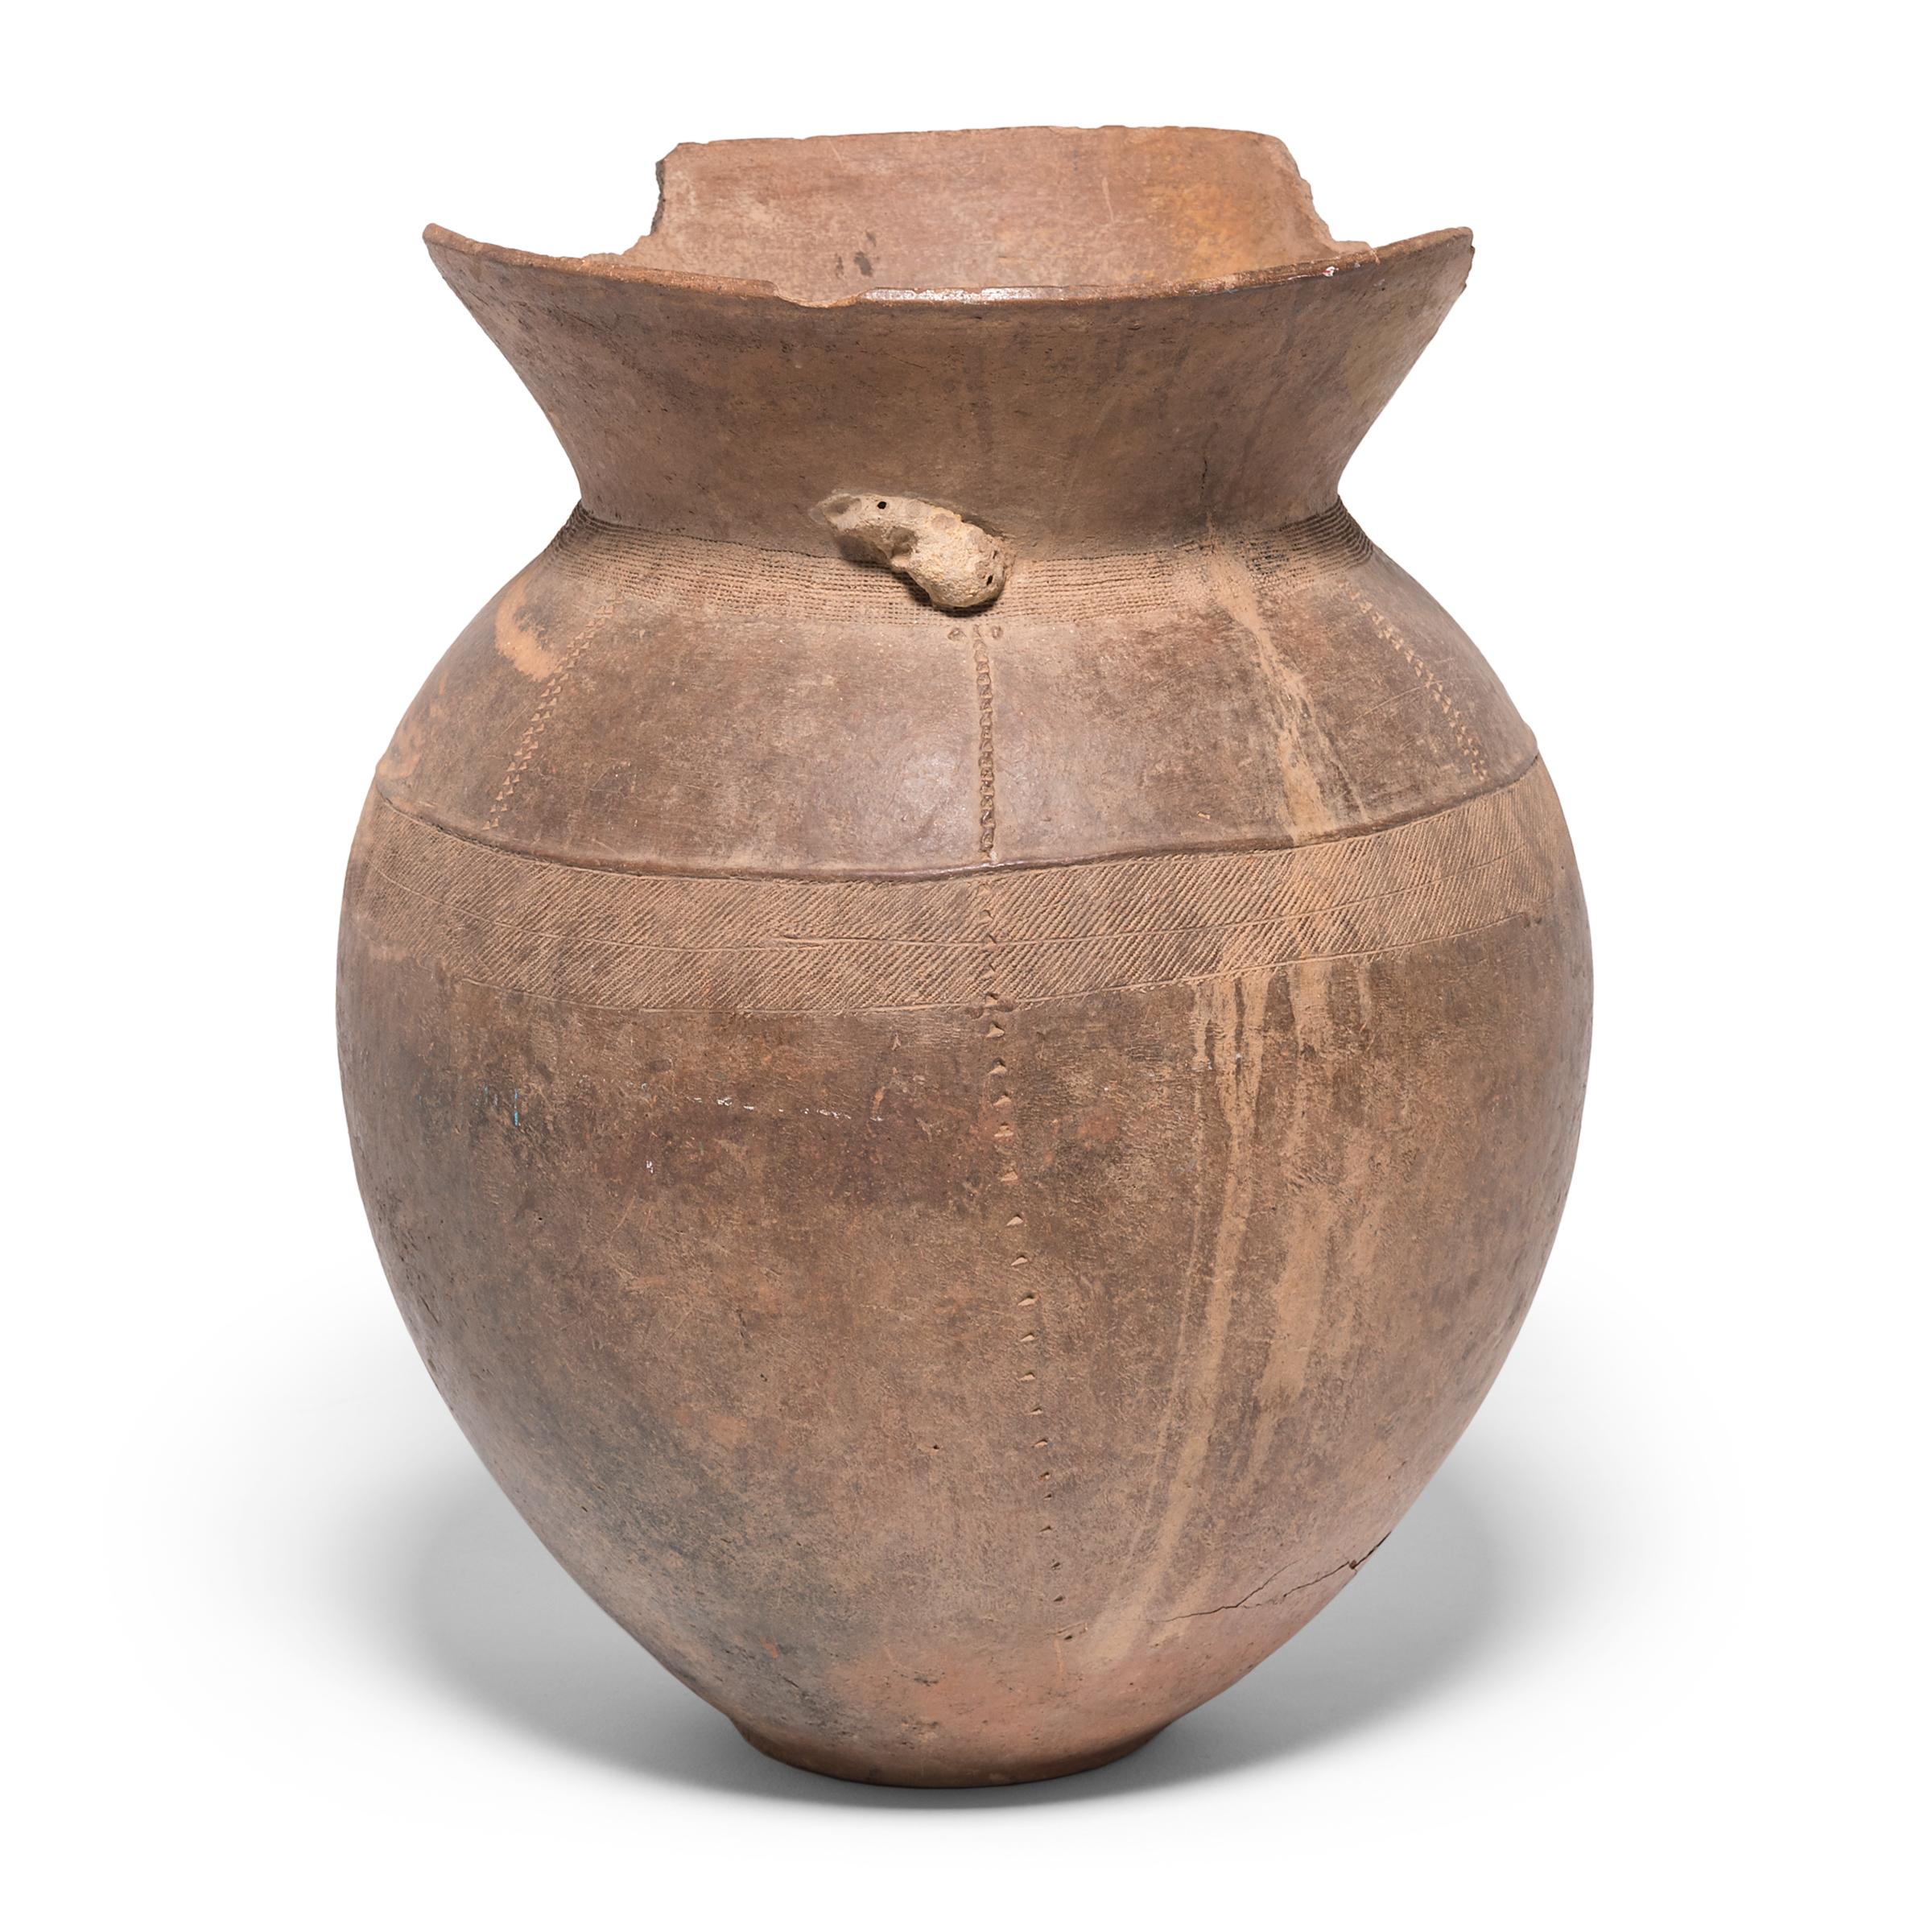 Das Volk der Nupe in Nigeria war als einer der besten Keramiker Afrikas bekannt. Alltäglichen Gegenständen, wie diesem Vorratsbehälter, wurde besondere Aufmerksamkeit gewidmet. Das Gefäß diente wahrscheinlich zur Aufbewahrung von Getreide und